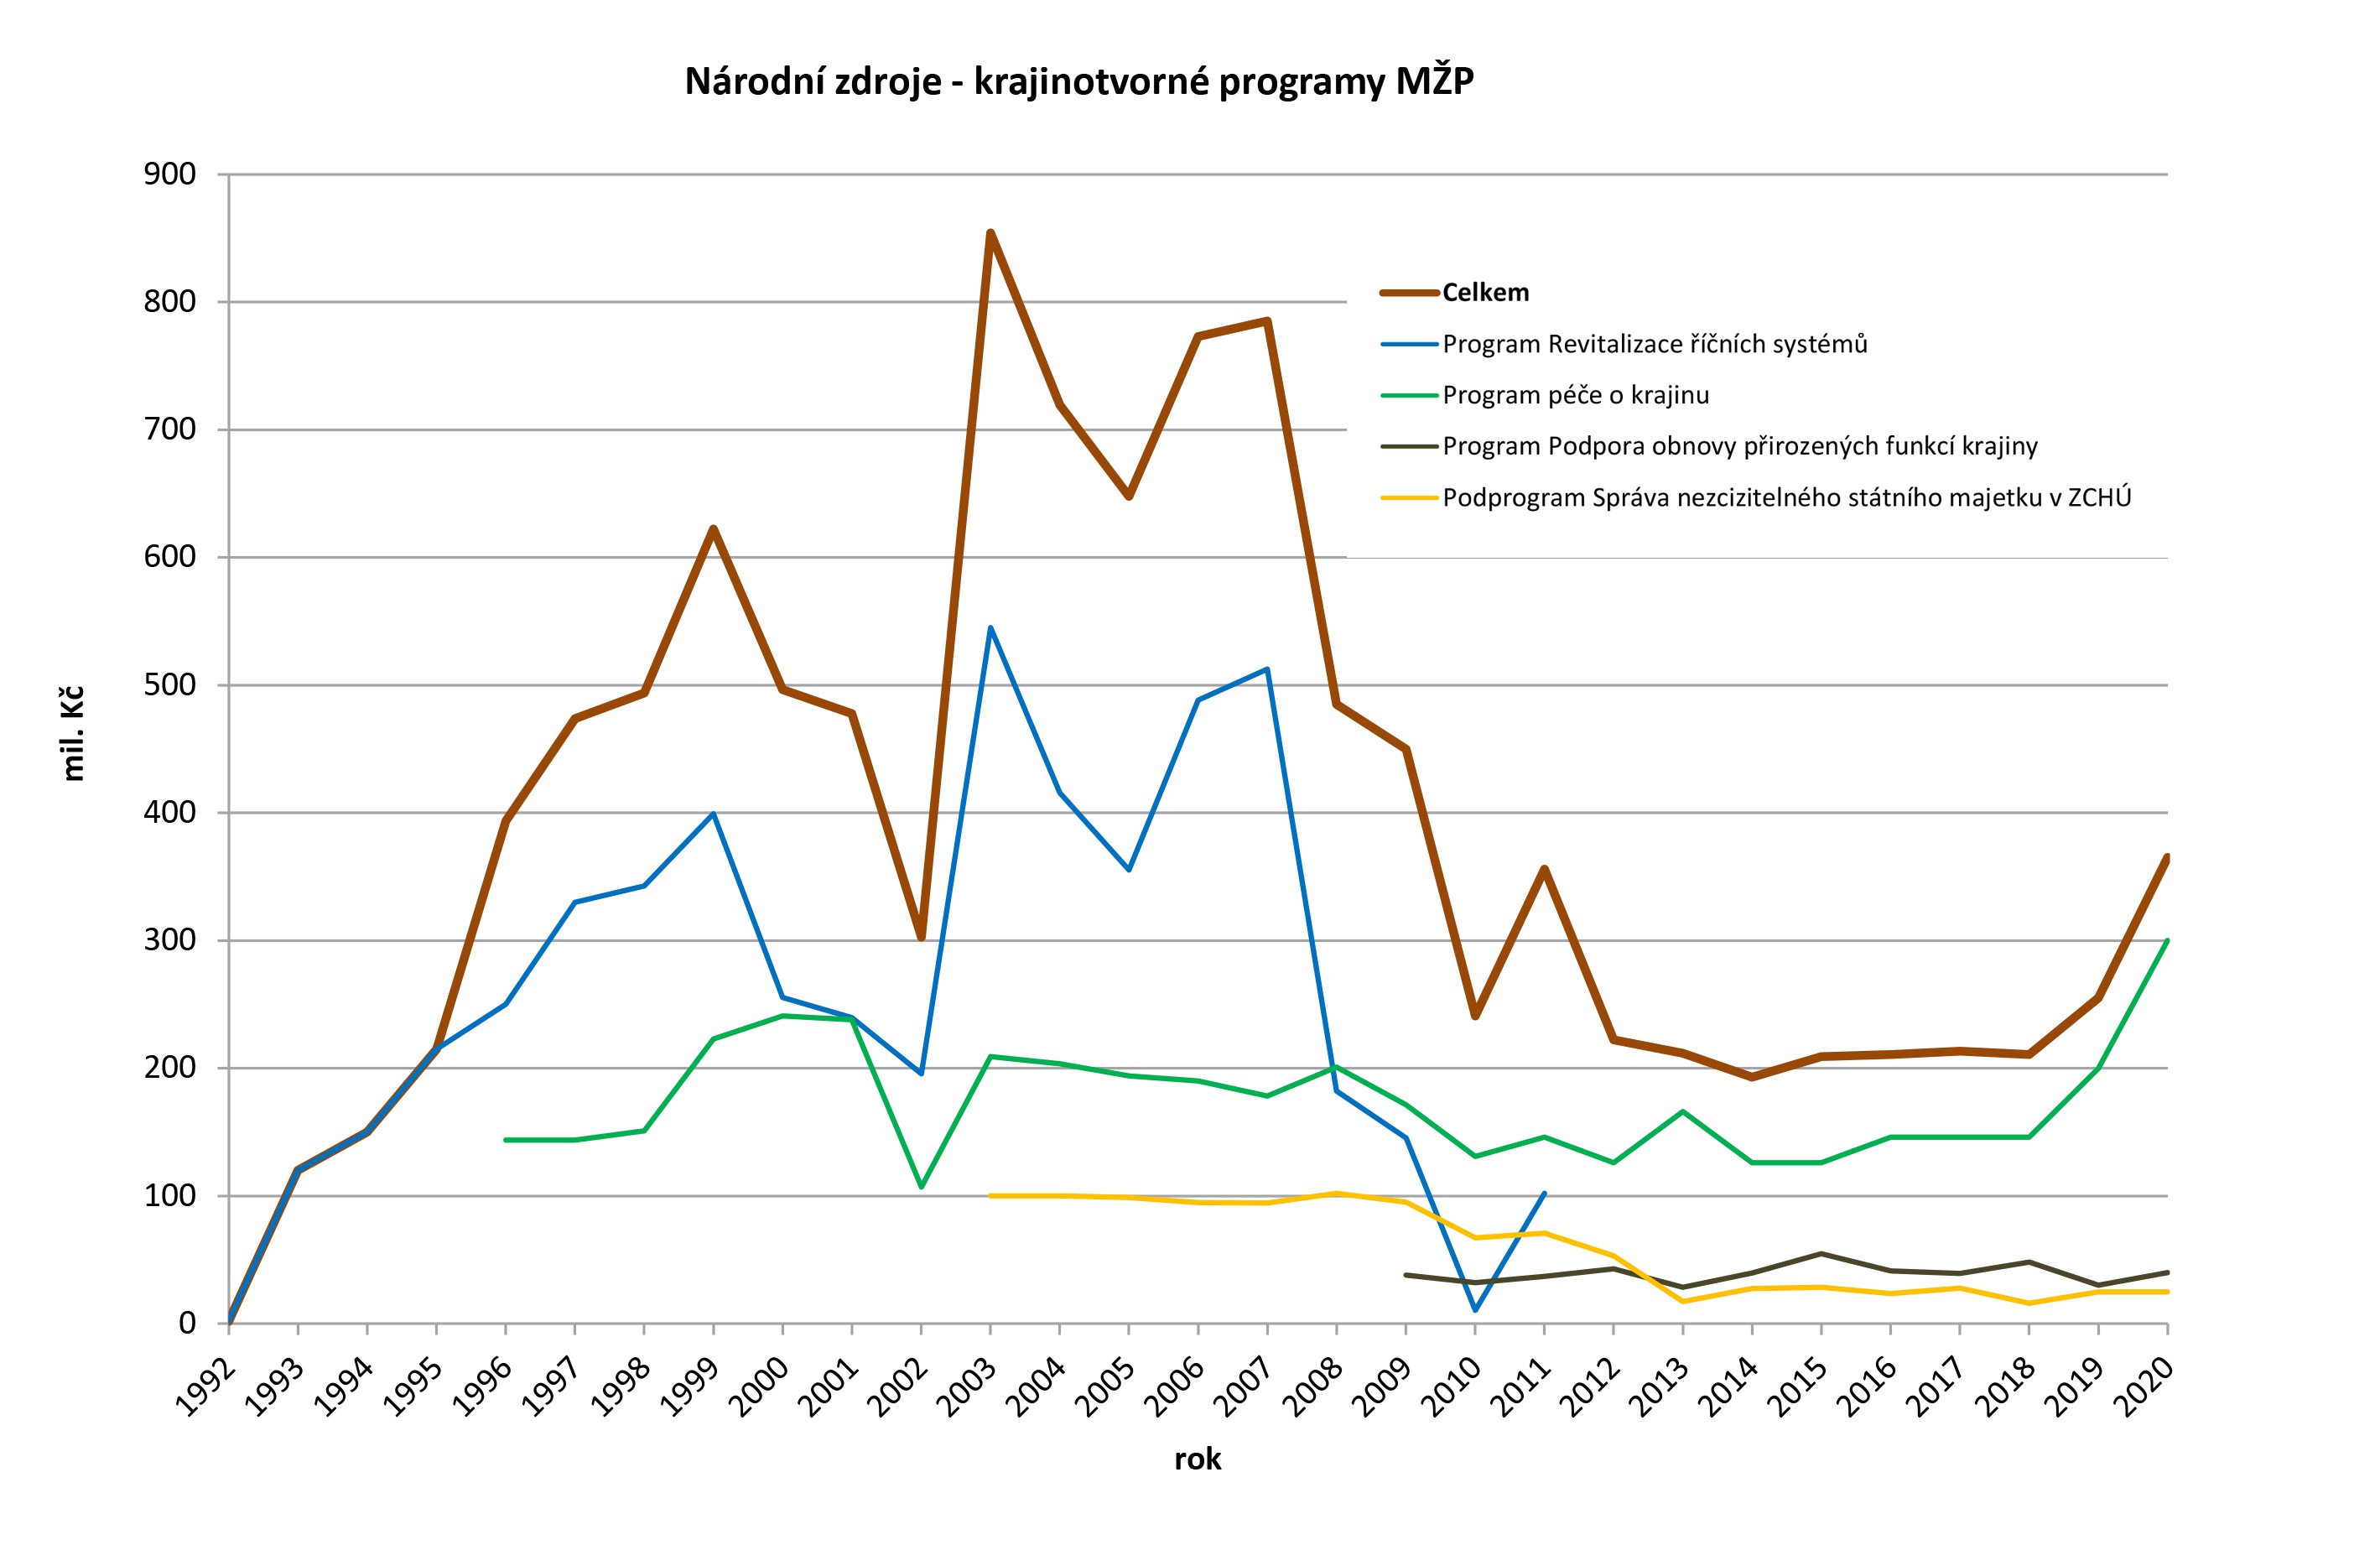 Graf 3: Vývoj finanční alokace v národních rozpočtových programech ukazuje pokles po roce 2007 způsobený přesunem podpory projektů investičního a obnovního charakteru zejména do OPŽP Zdroj: AOPK ČR